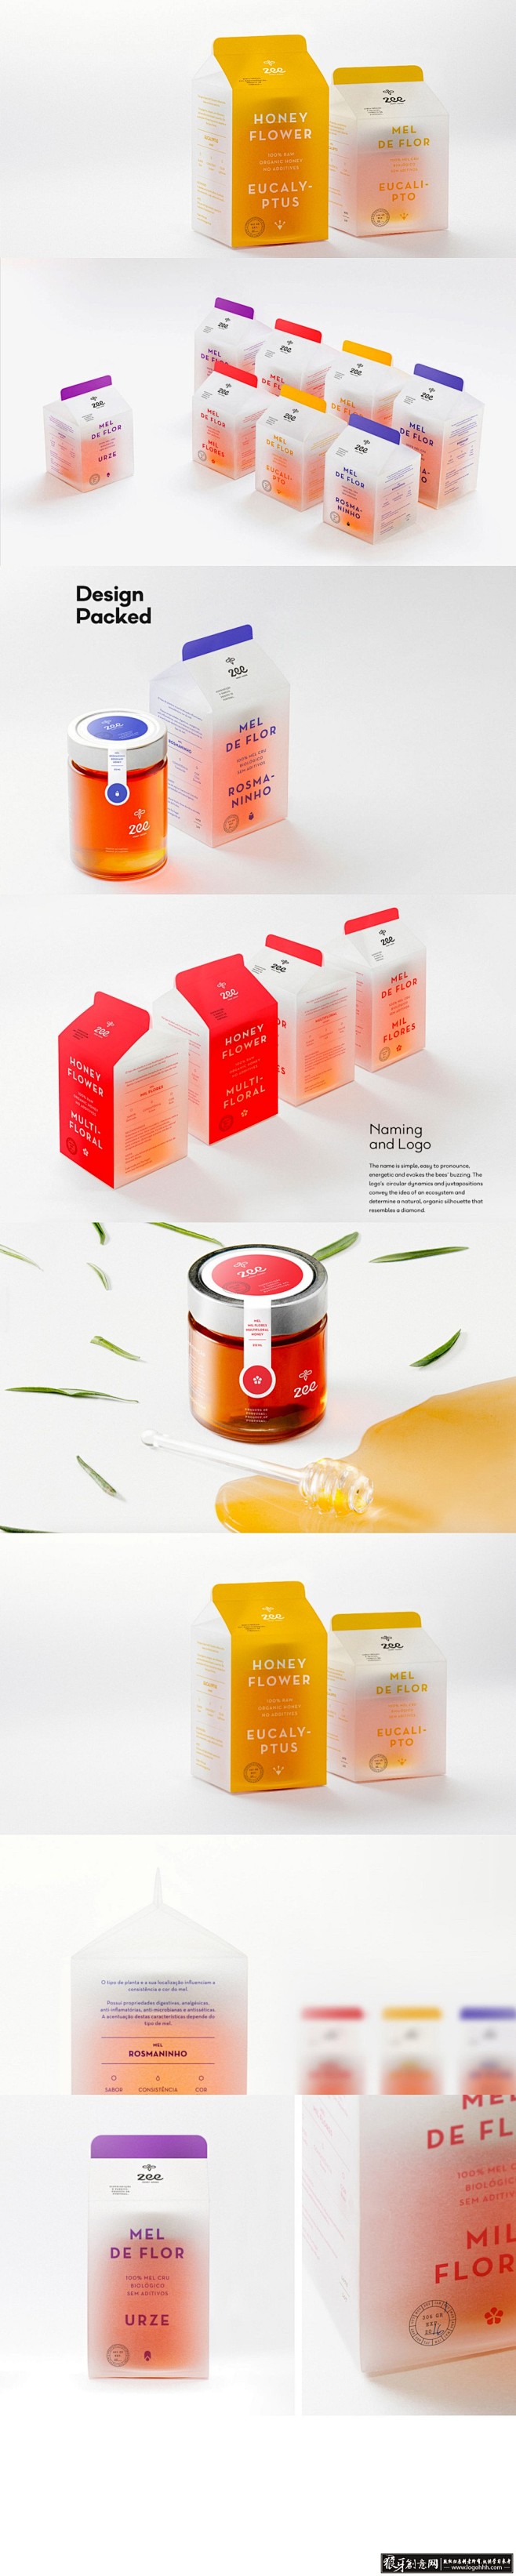 包装设计灵感 蜂蜜产品包装设计_VI、品...